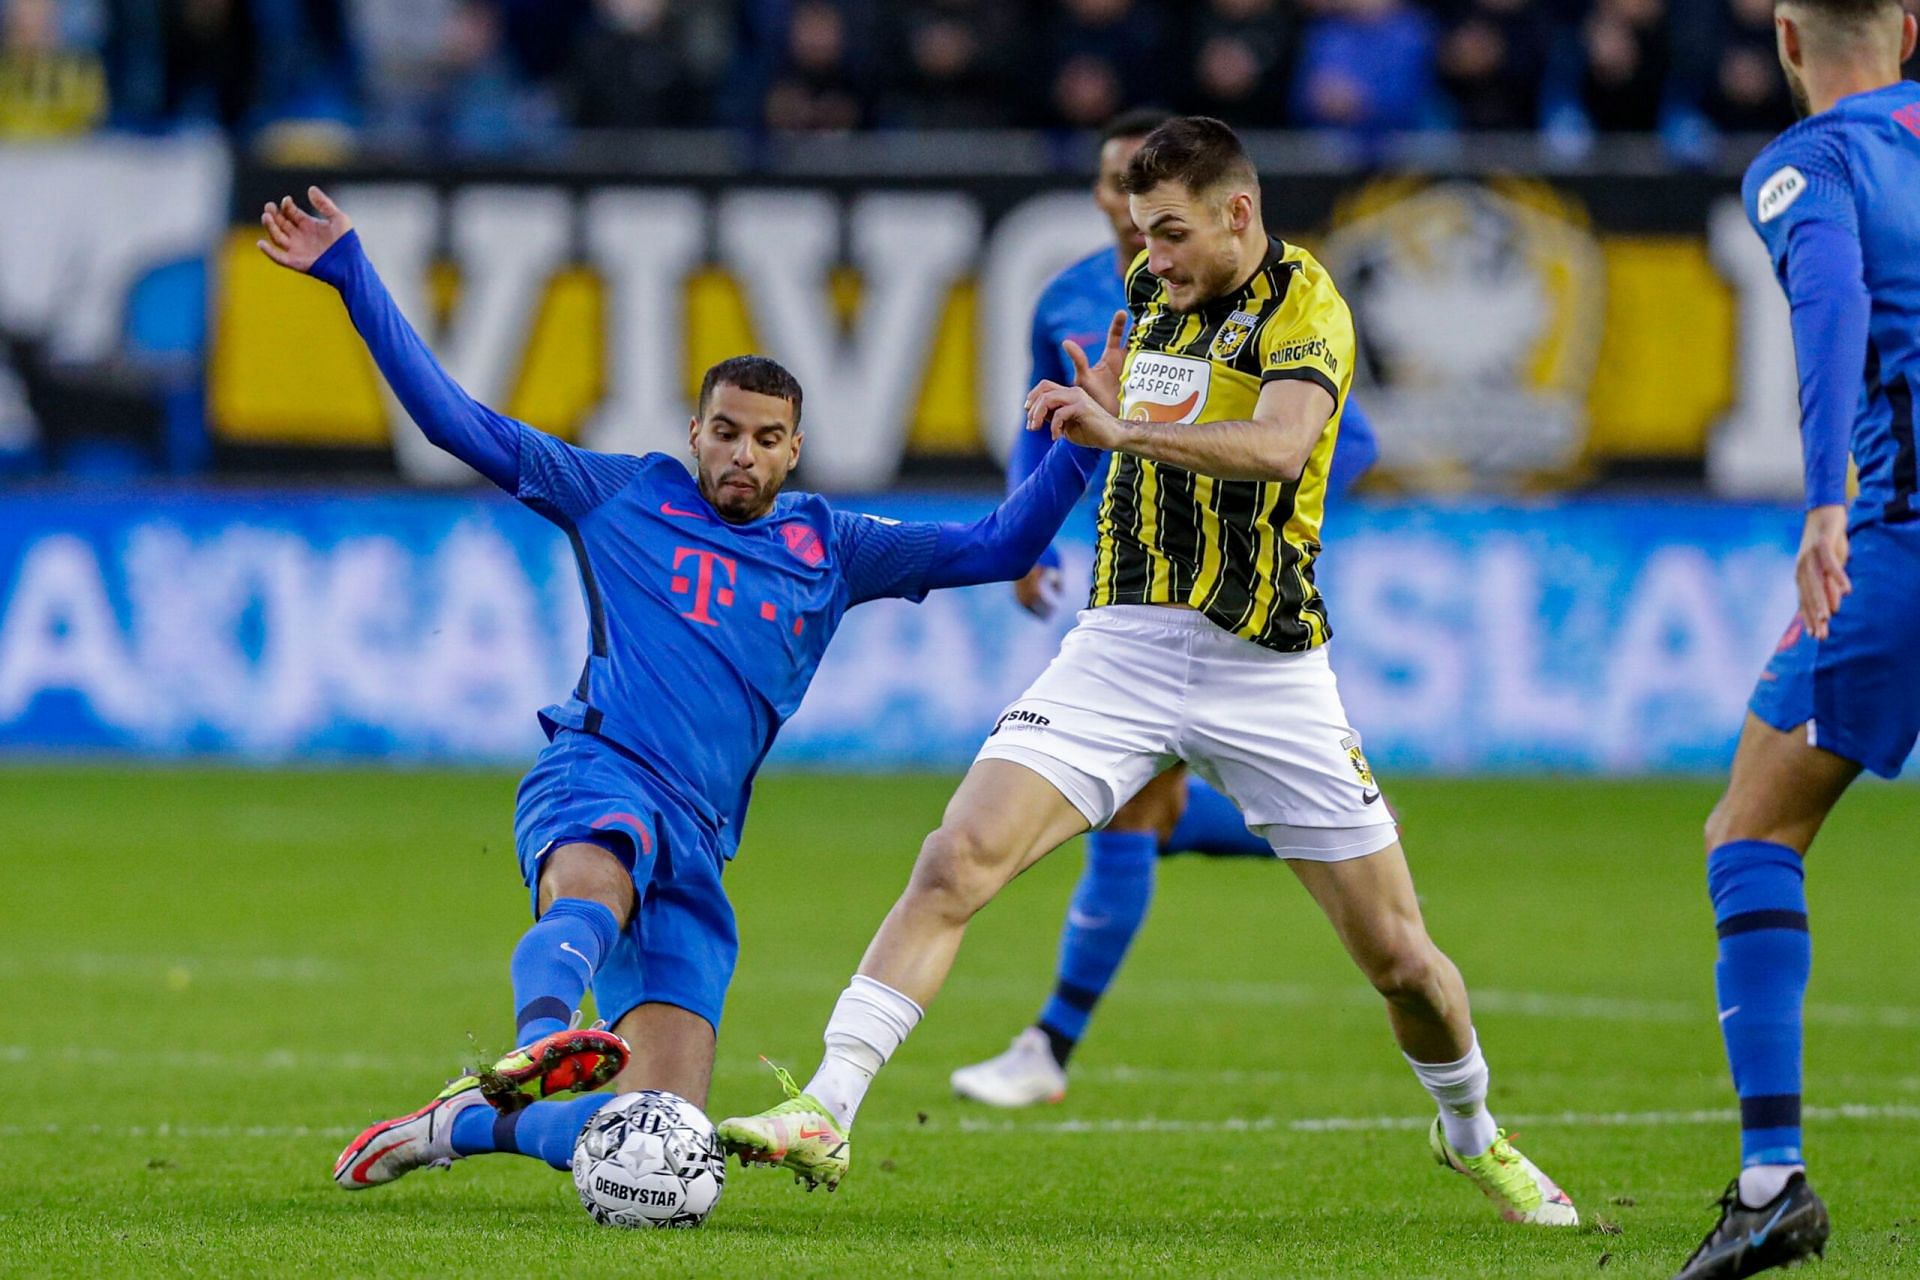 Utrecht face Vitesse in their Eredivisie playoffs fixture on Thursday